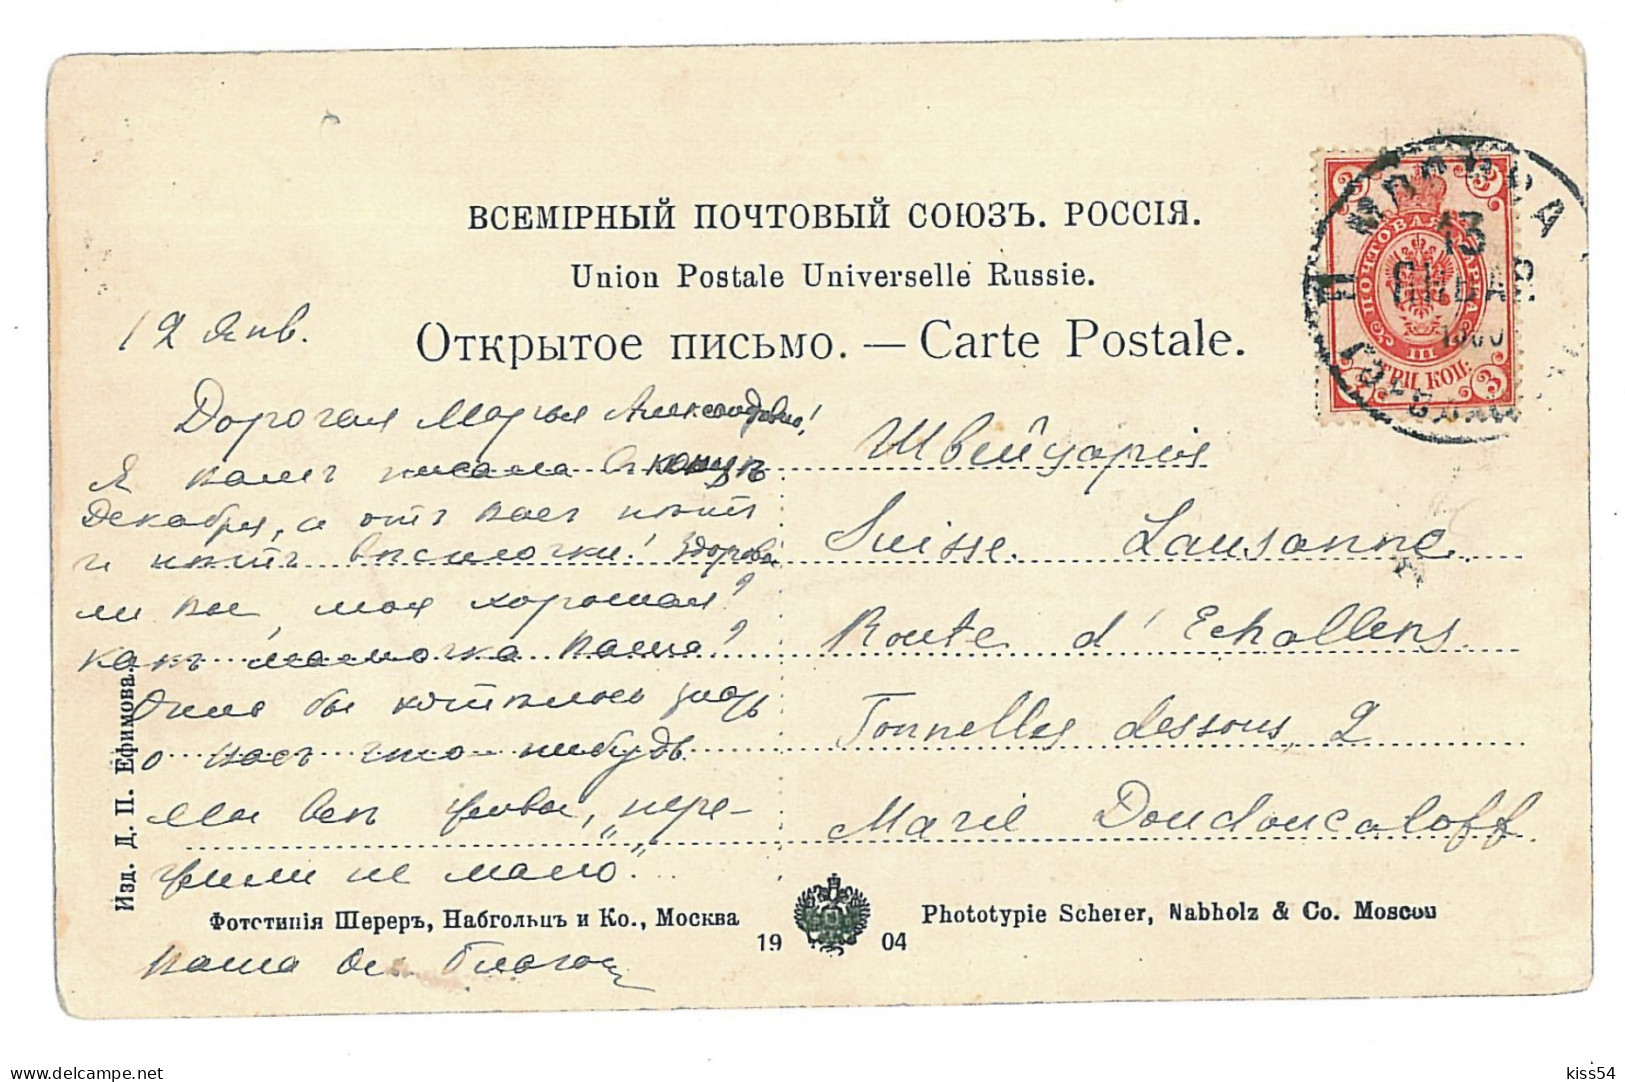 RUS 91 - 9897 VLADIVOSTOCK, Russia, Harbor - Old Postcard - Used - 1903 - Rusland